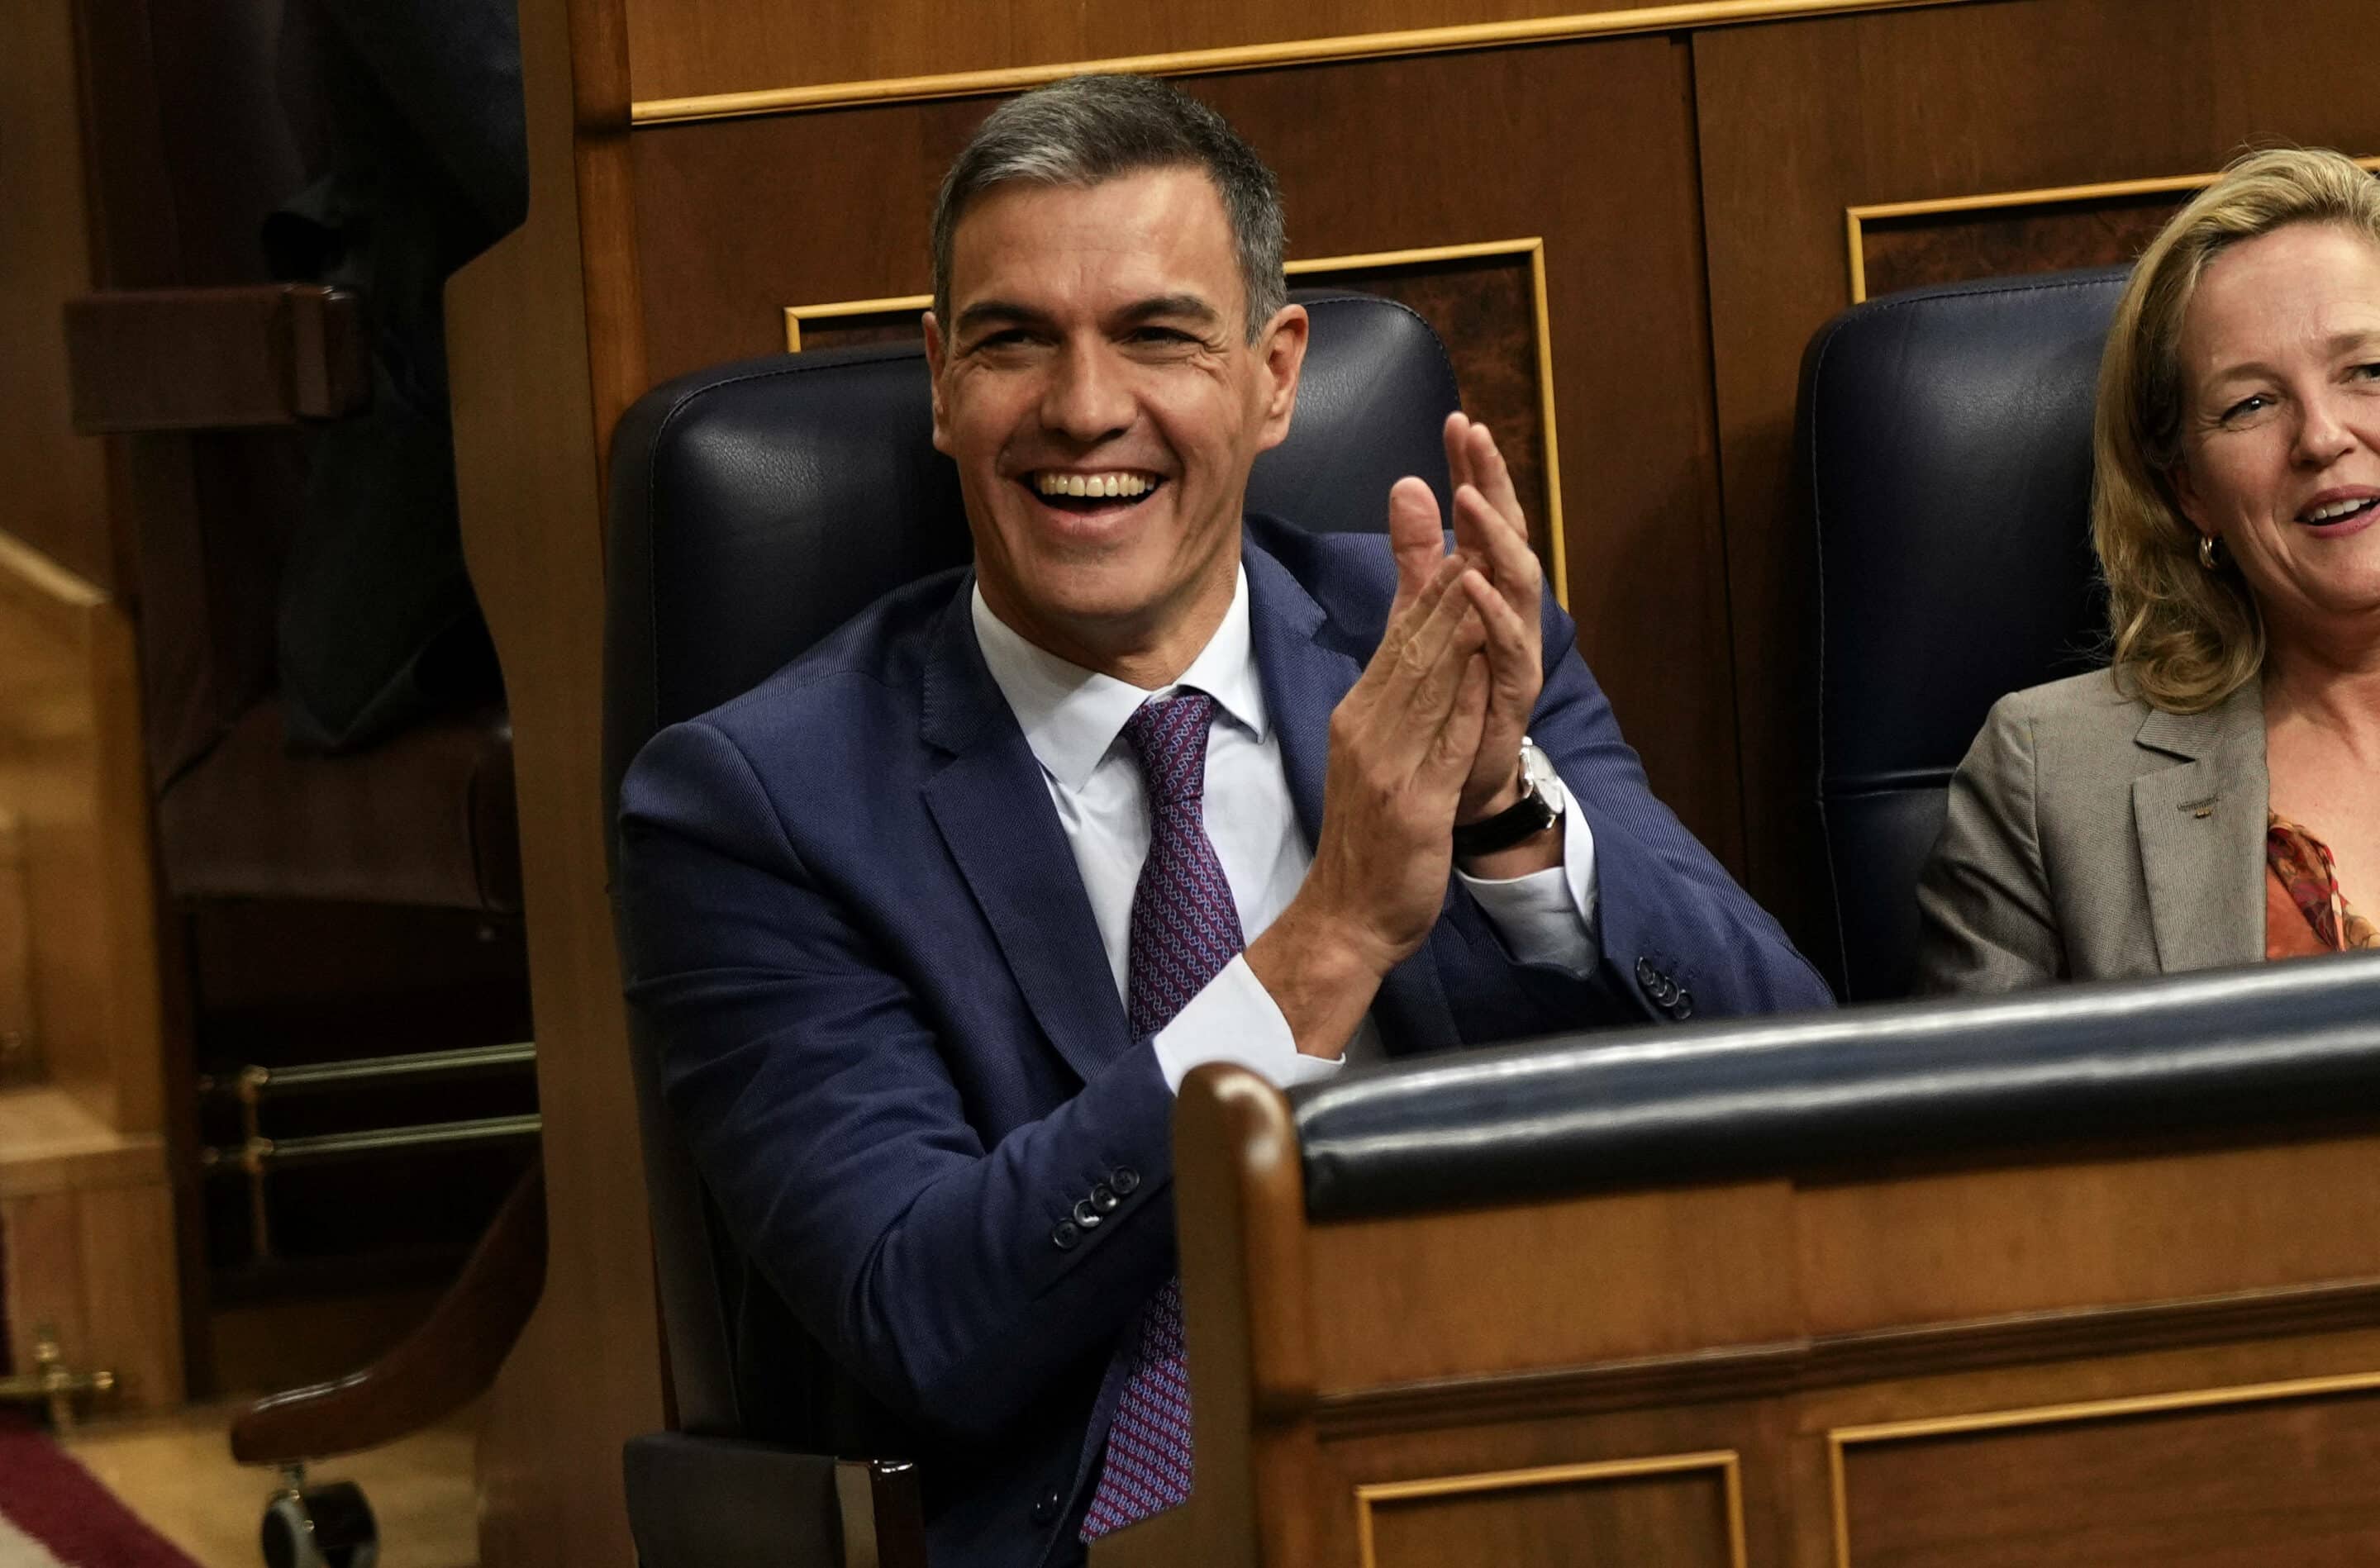 Pedro Sanchez tout sourire. Il a perdu et en même temps gagné. (AP Photo/Bernat Armangue)